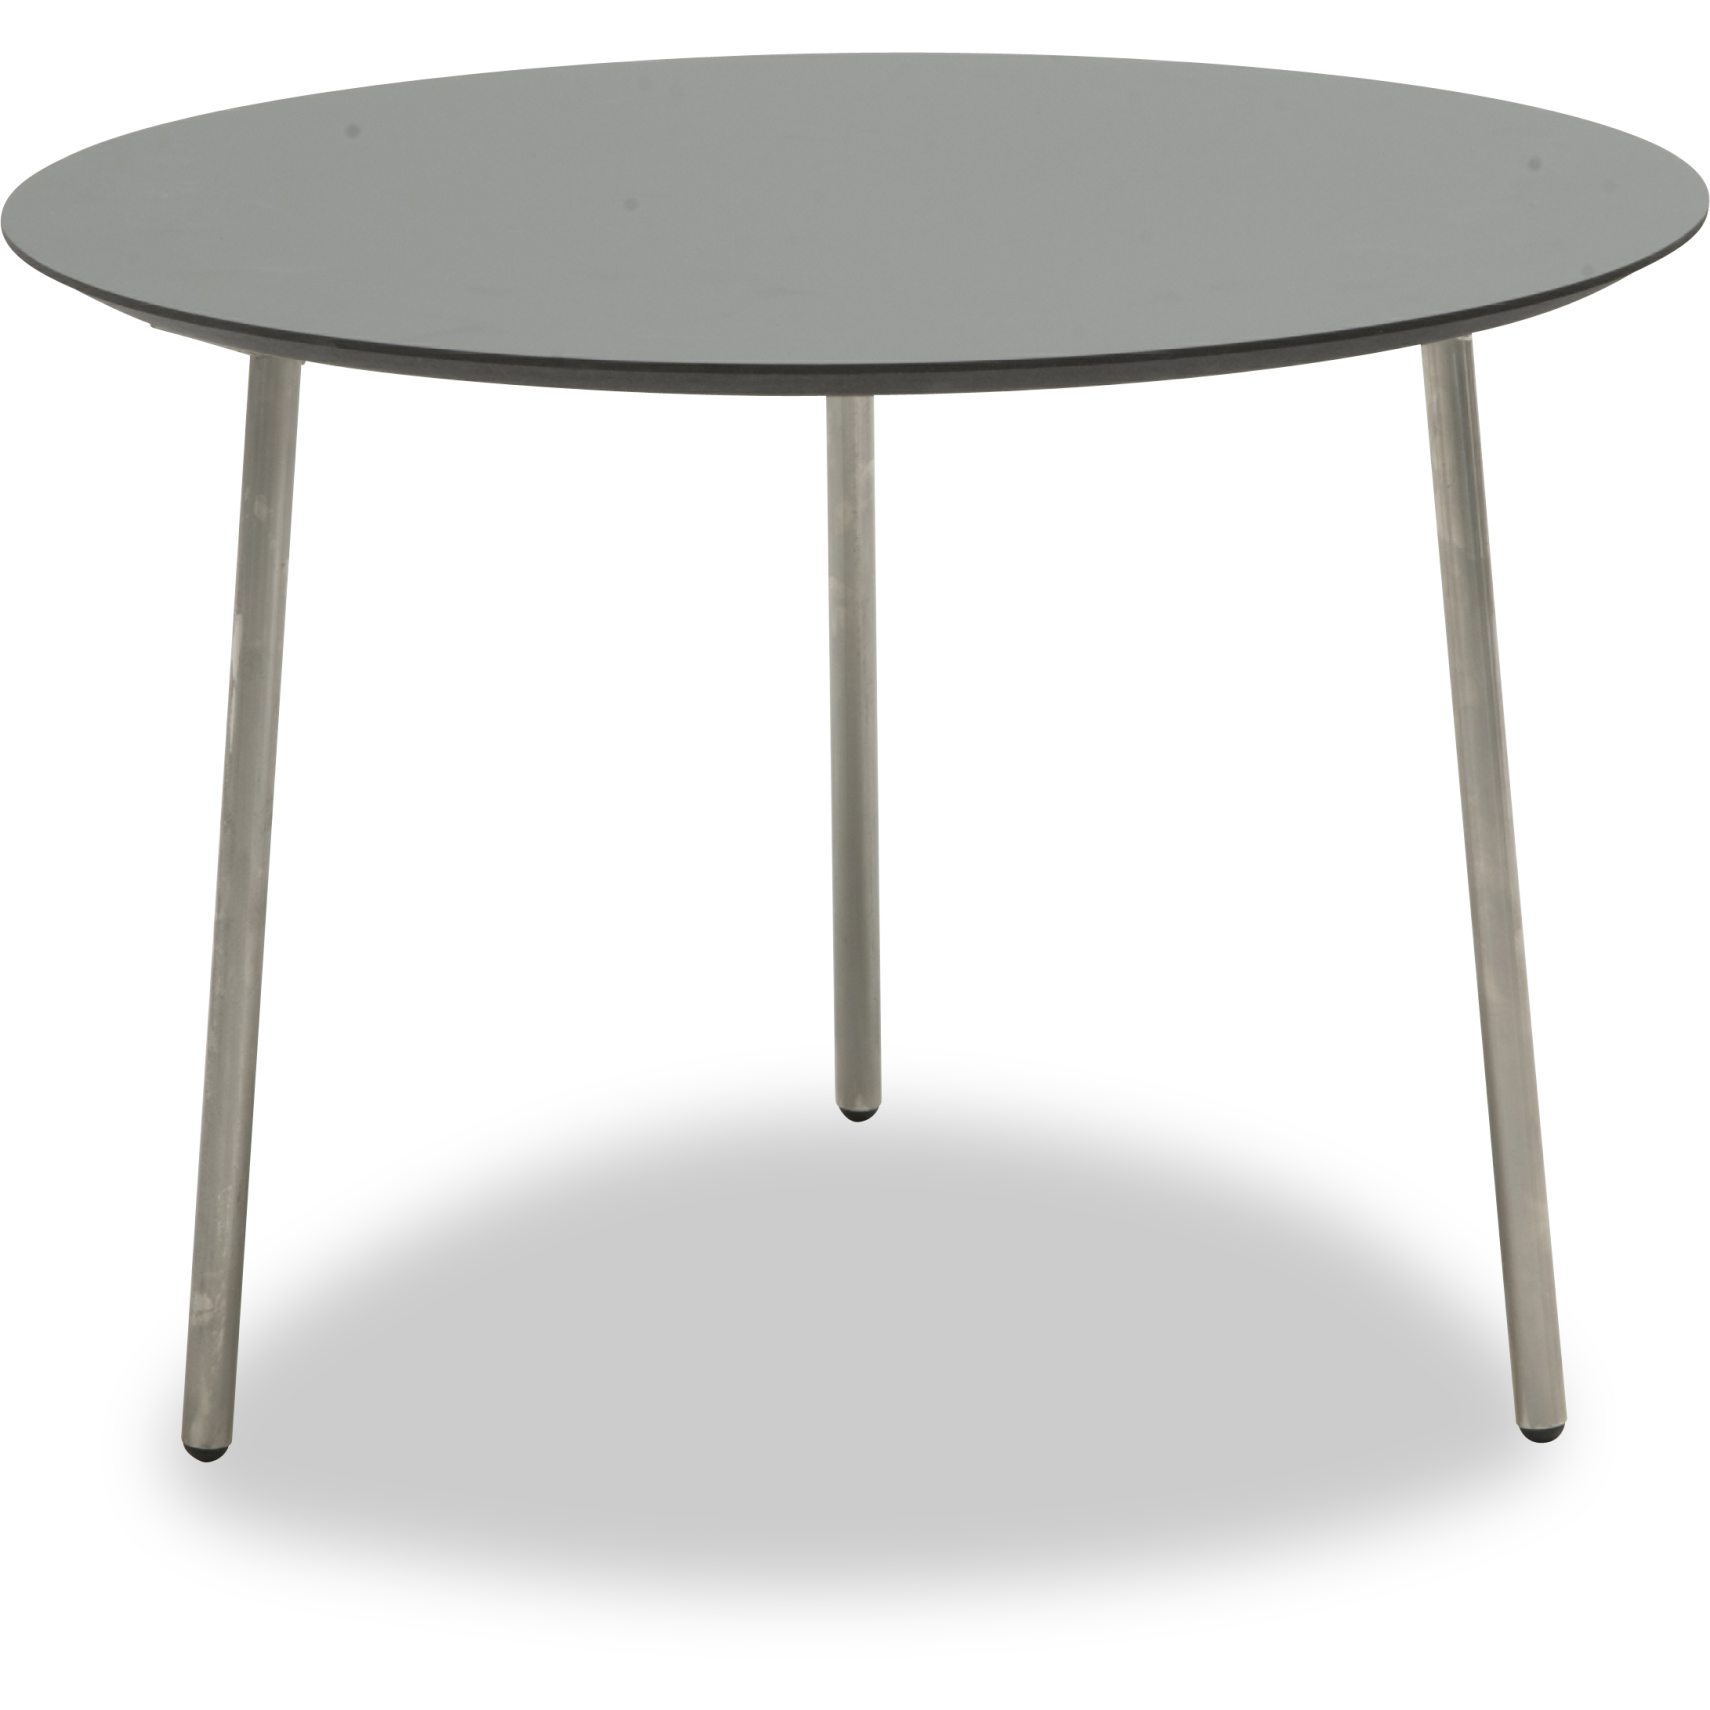 Spark Sofabord 65 x 45 x 55 cm - Laminat Mørk Grå, sort kant MDF og ben i børstet stål.